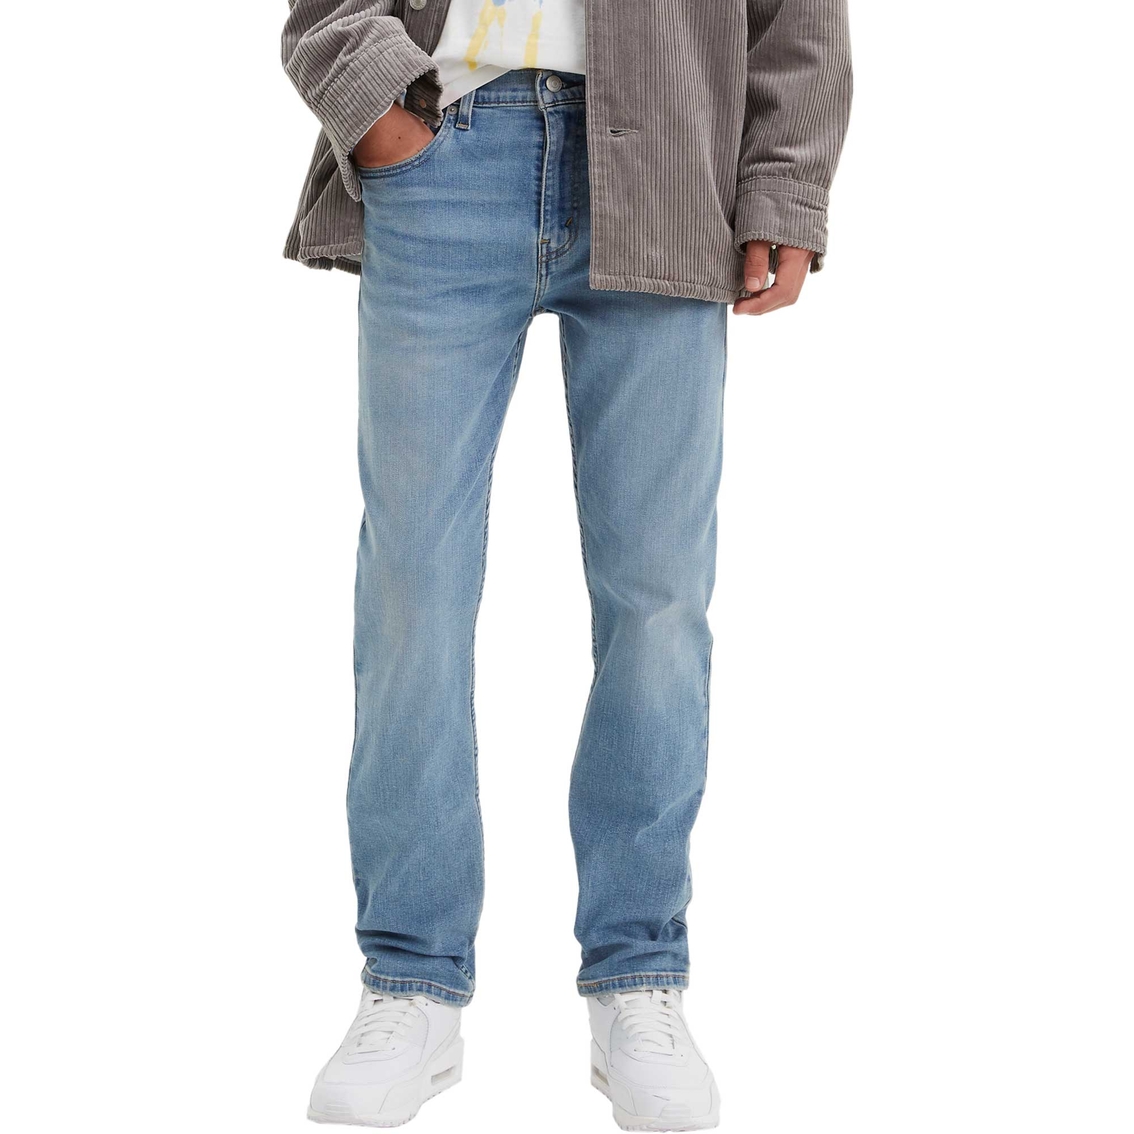 Levi's 502 Taper Fit Flex Jeans | Jeans | Clothing & Accessories | Shop ...